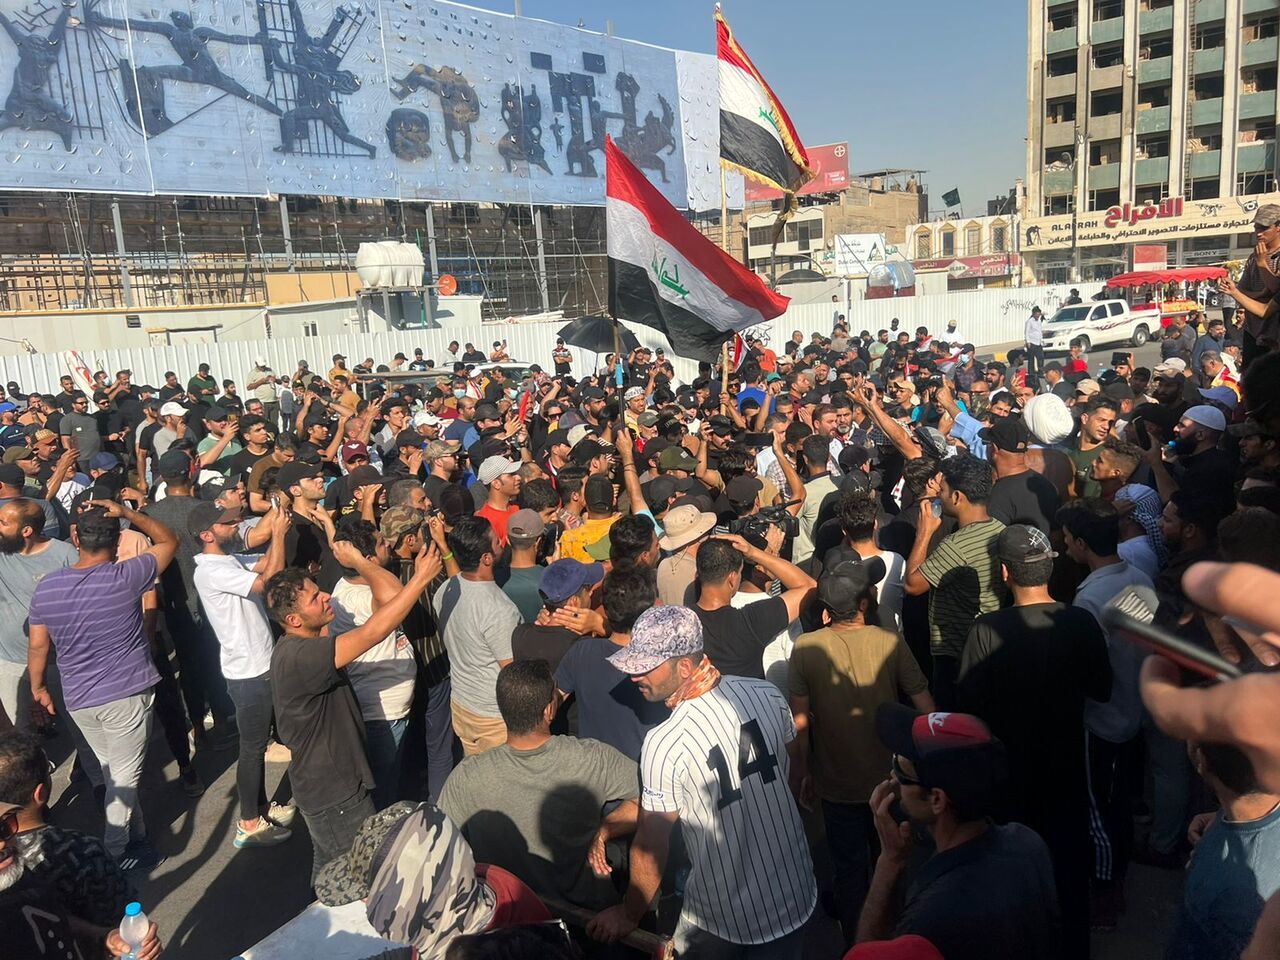 واکنش سازمان ملل به اعتراضات در منطقه سبز بغداد